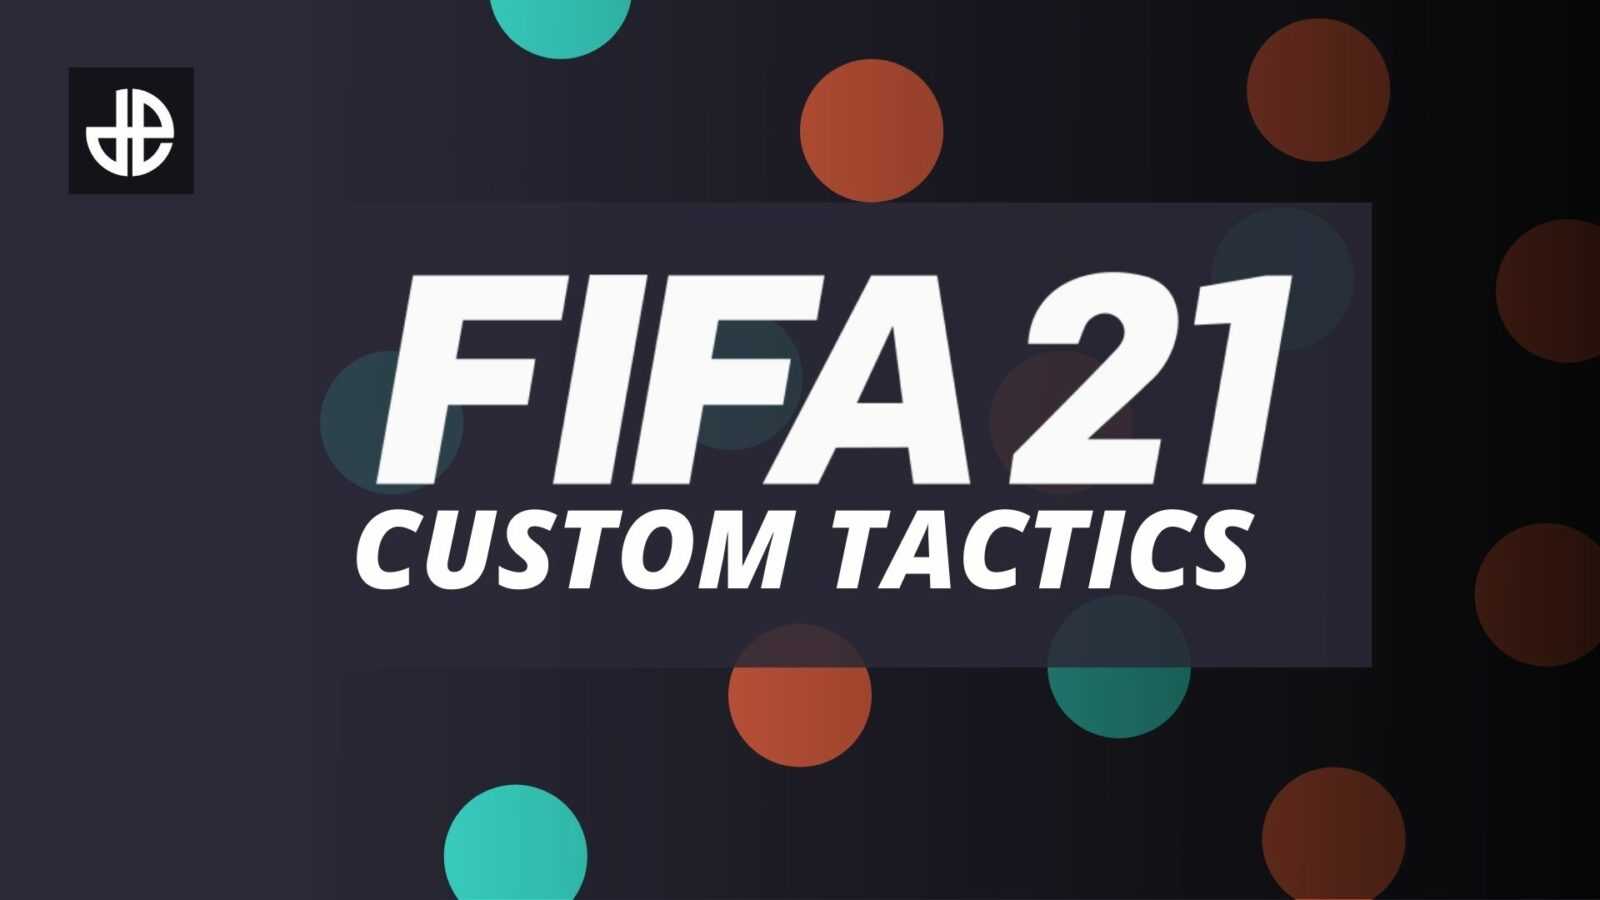 FIFA 21 migliori tattiche personalizzate, formazioni e istruzioni per i giocatori